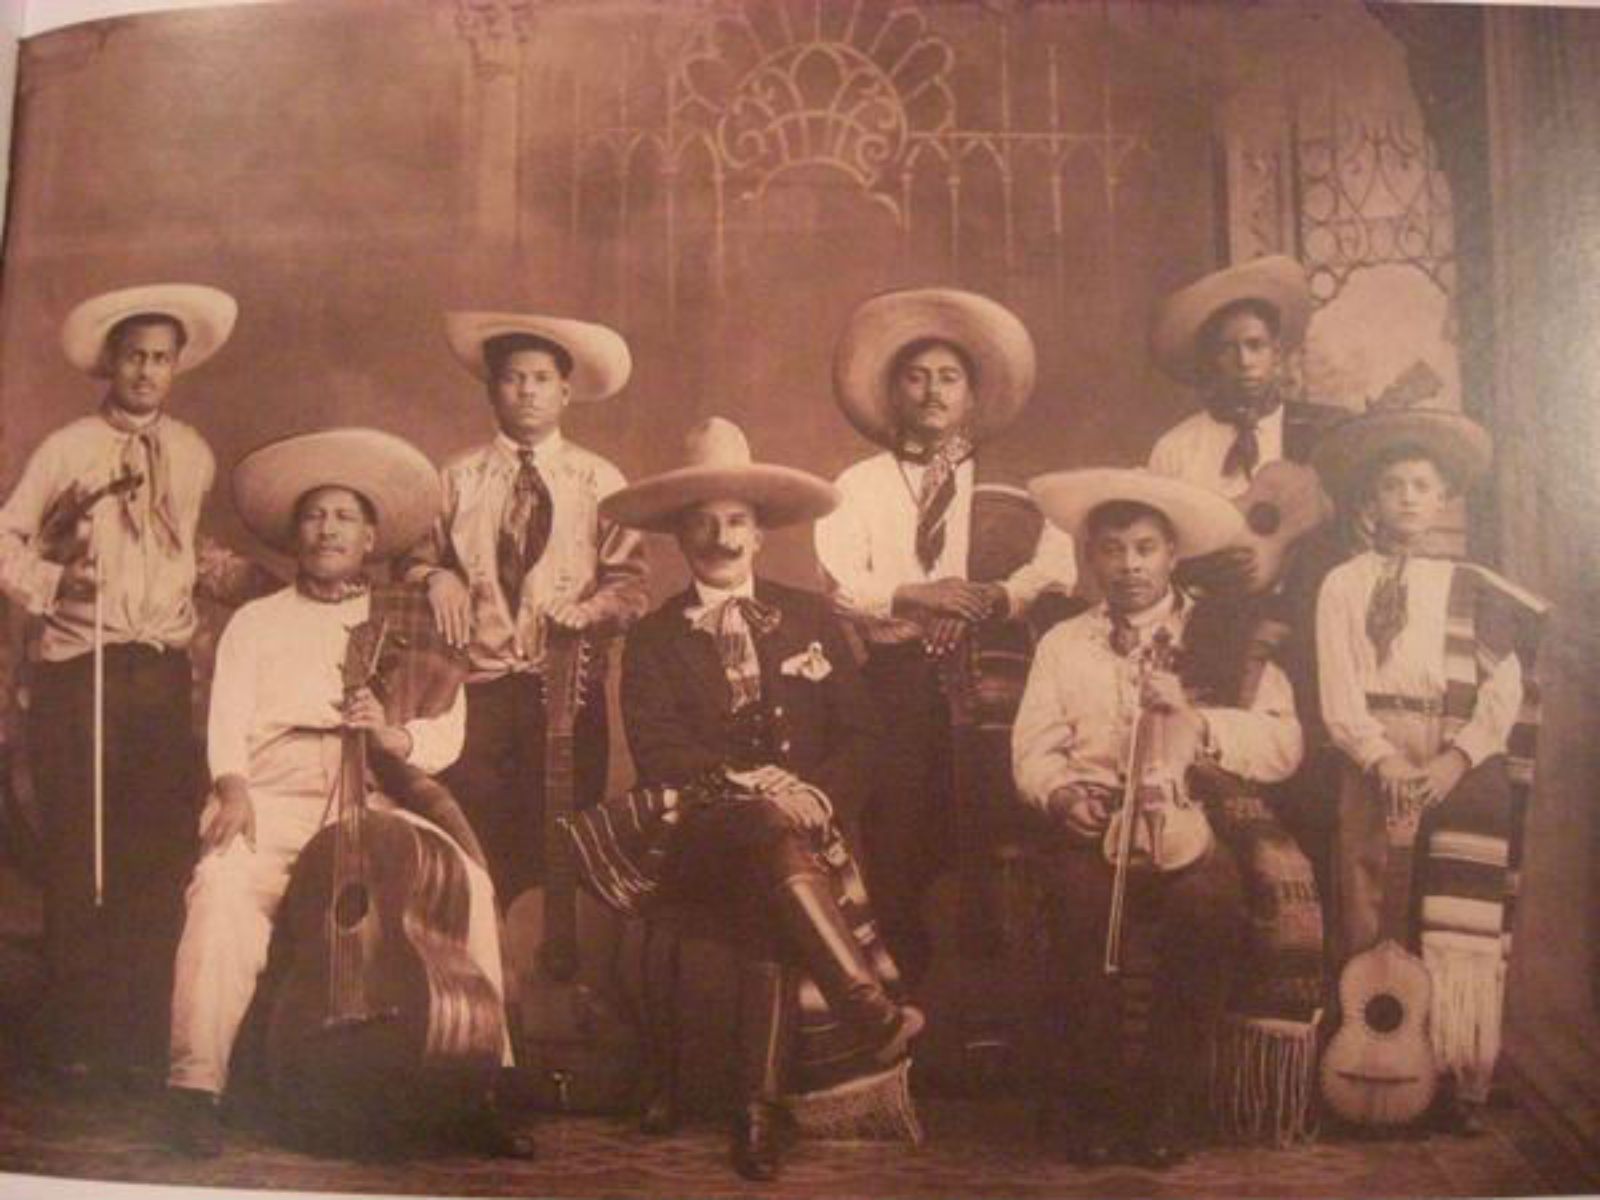 Mariachis En Bogotá: Euforia Musical